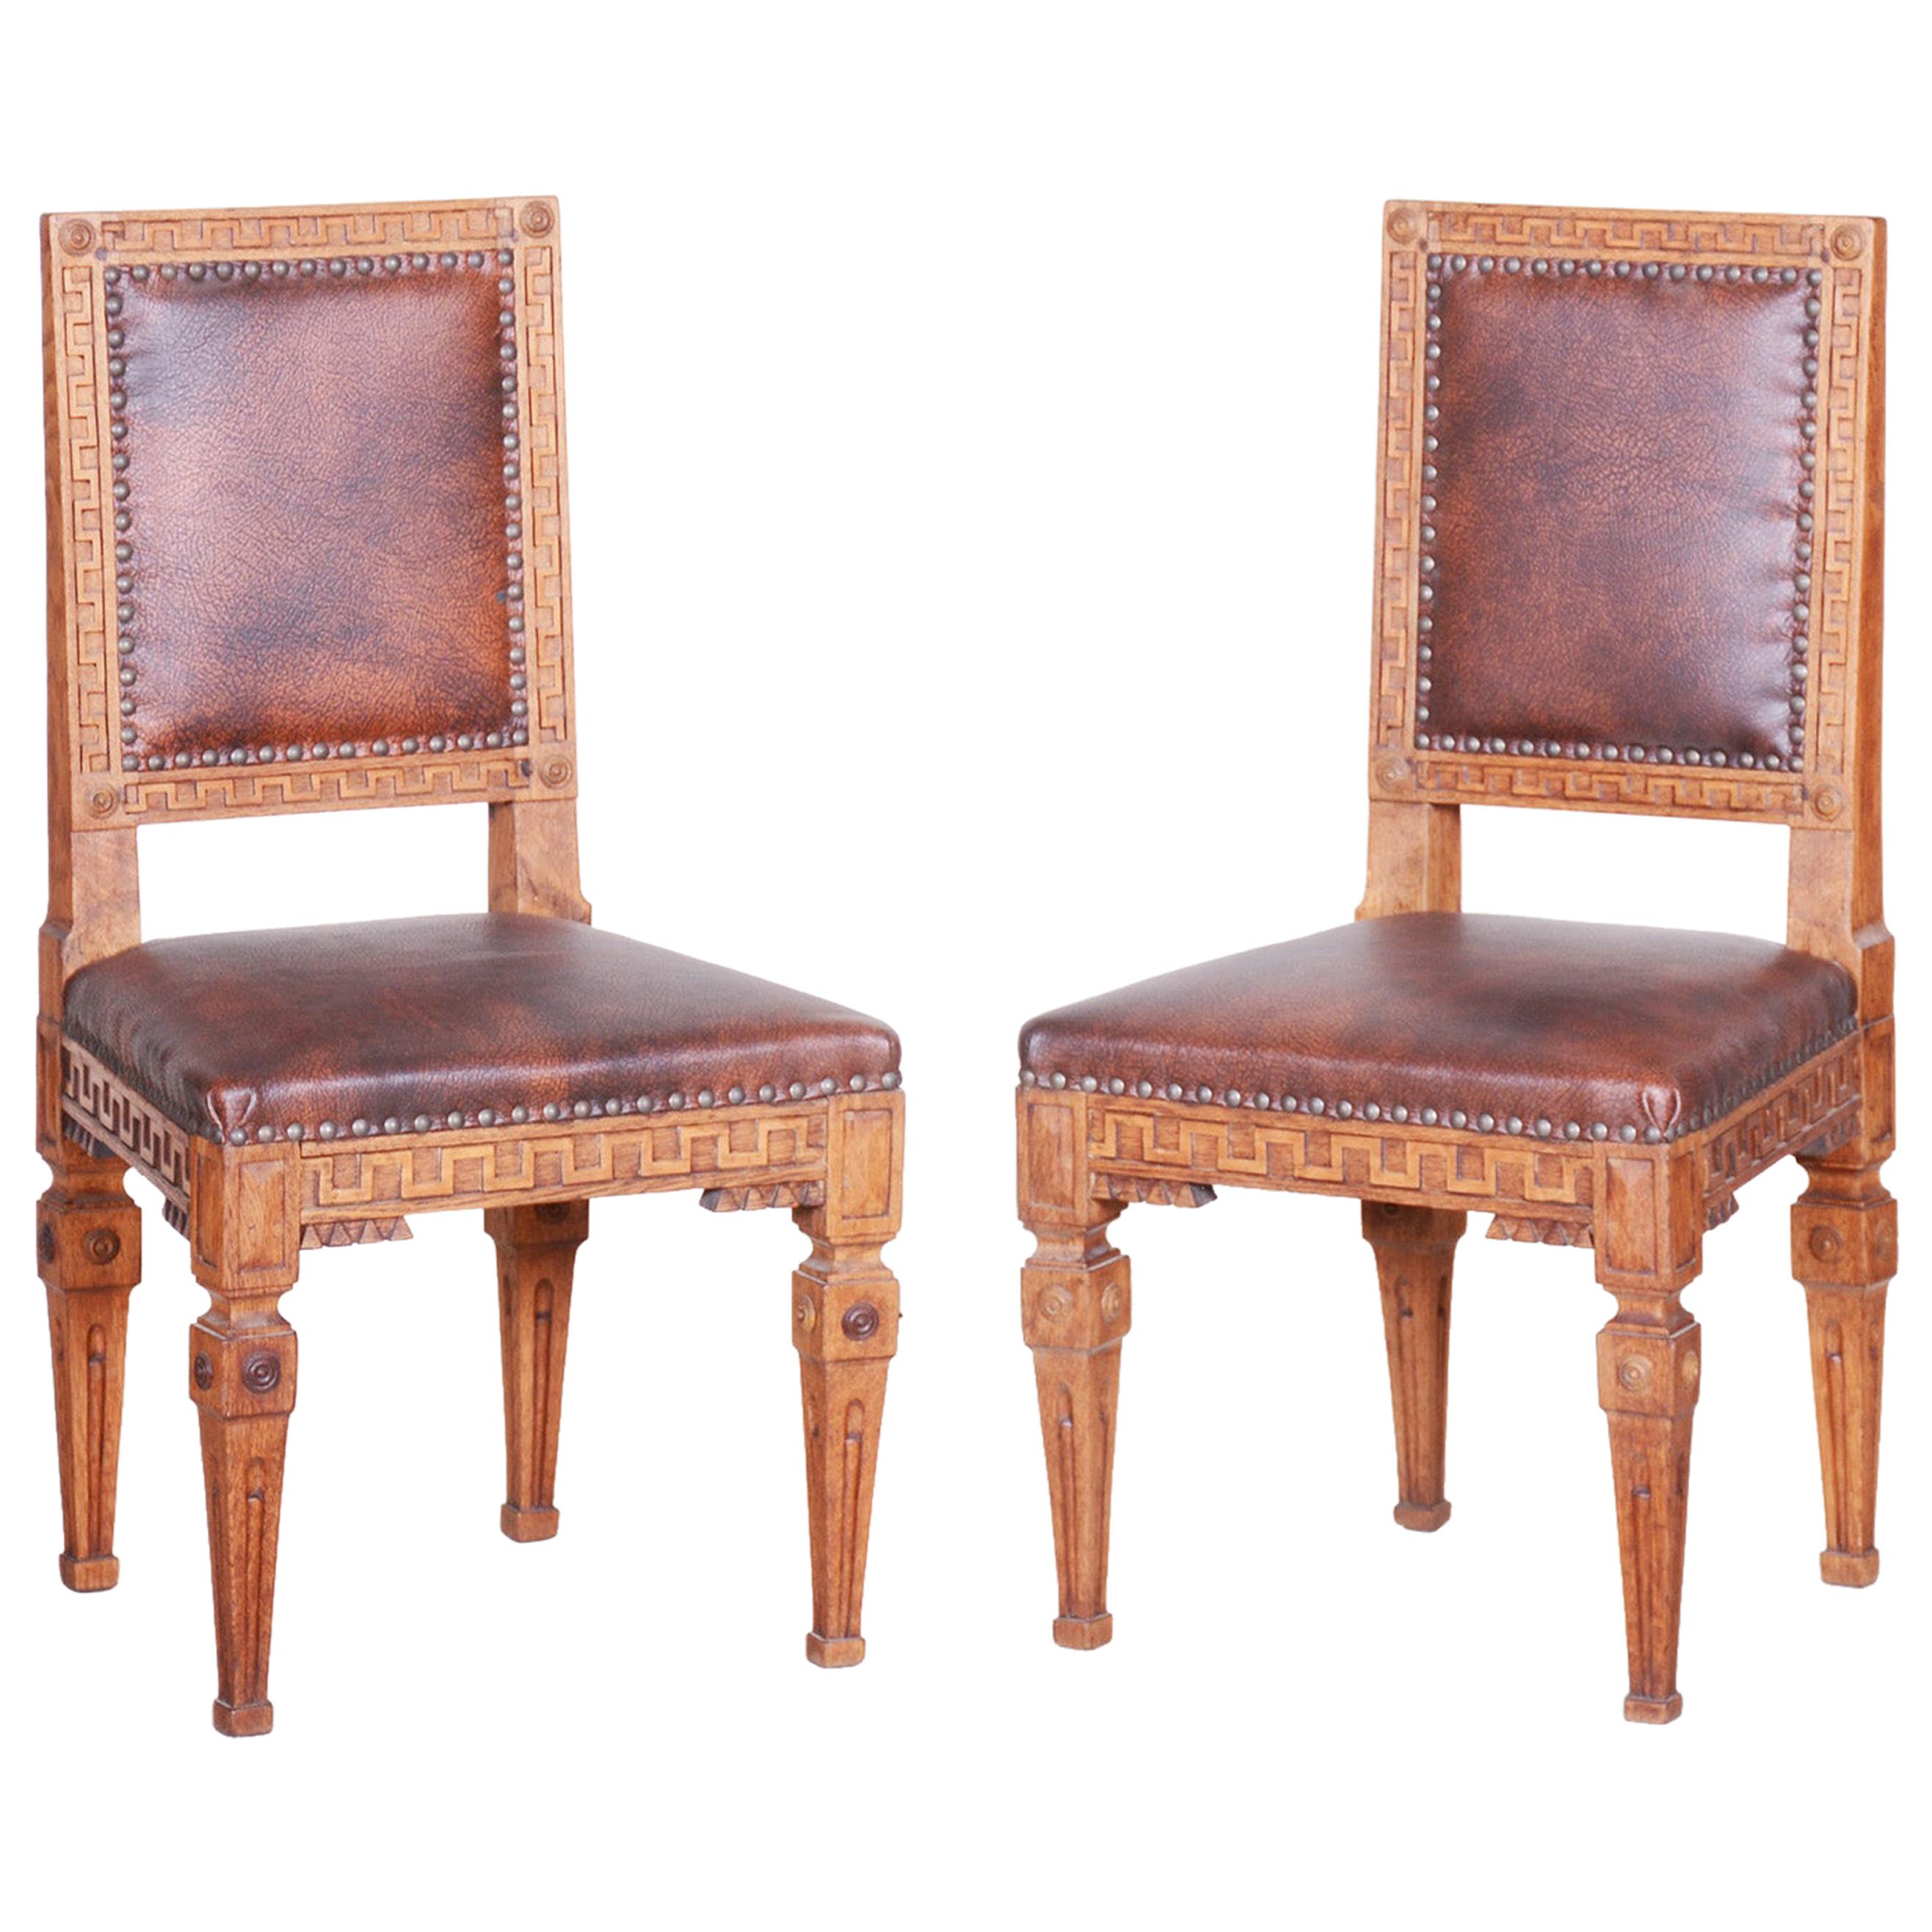 Pair of Early 19th Century Czech Biedermeier Oak Chairs, Czechia, 1800s For Sale